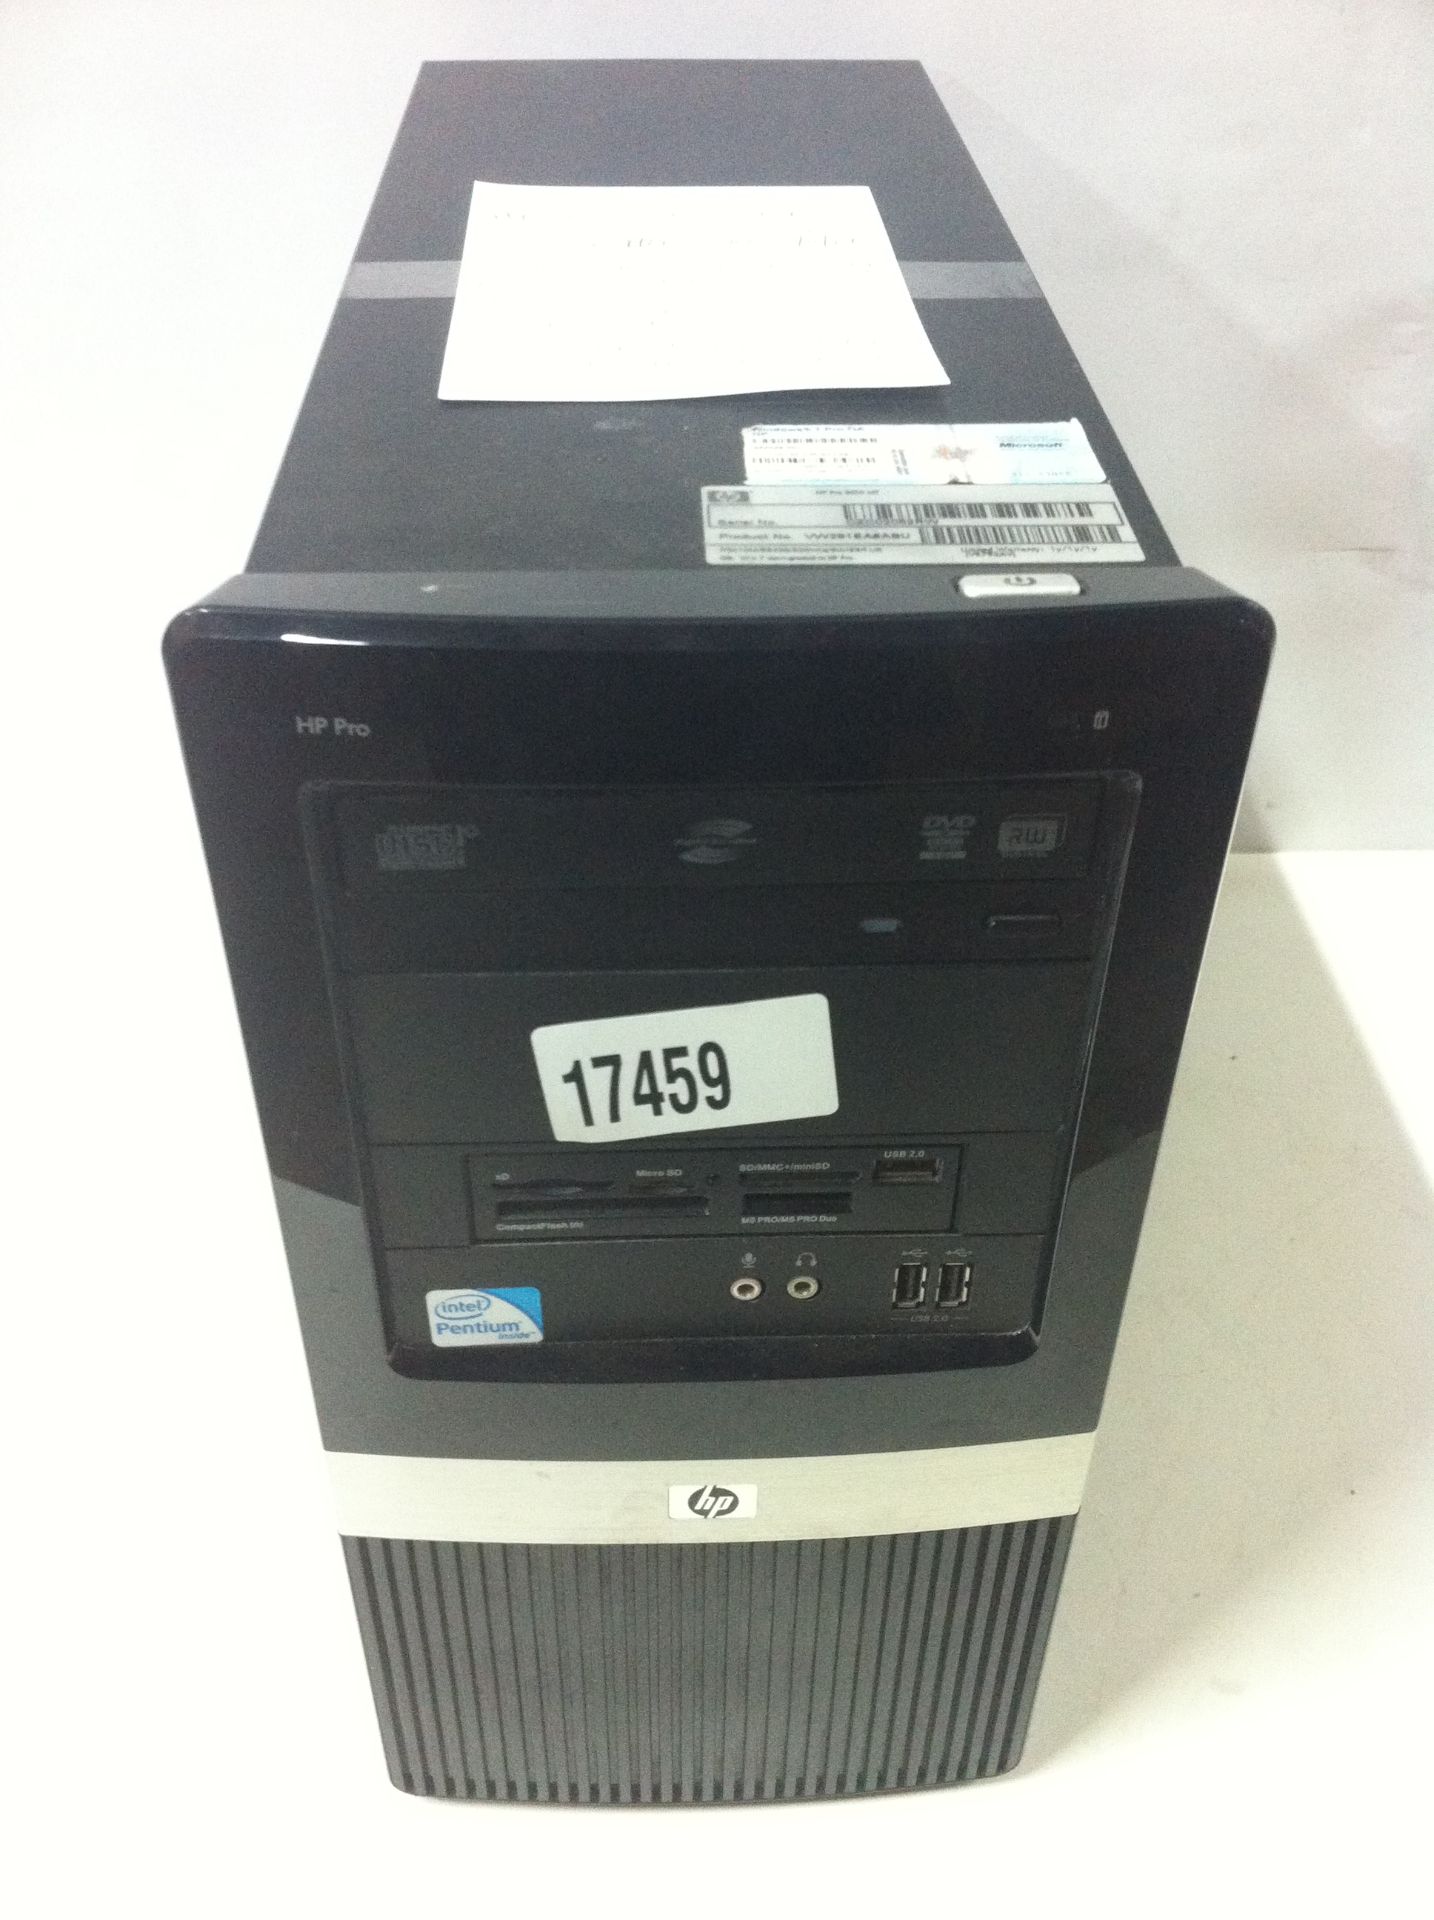 5x HP Desktop PC's - See Description - Image 4 of 6